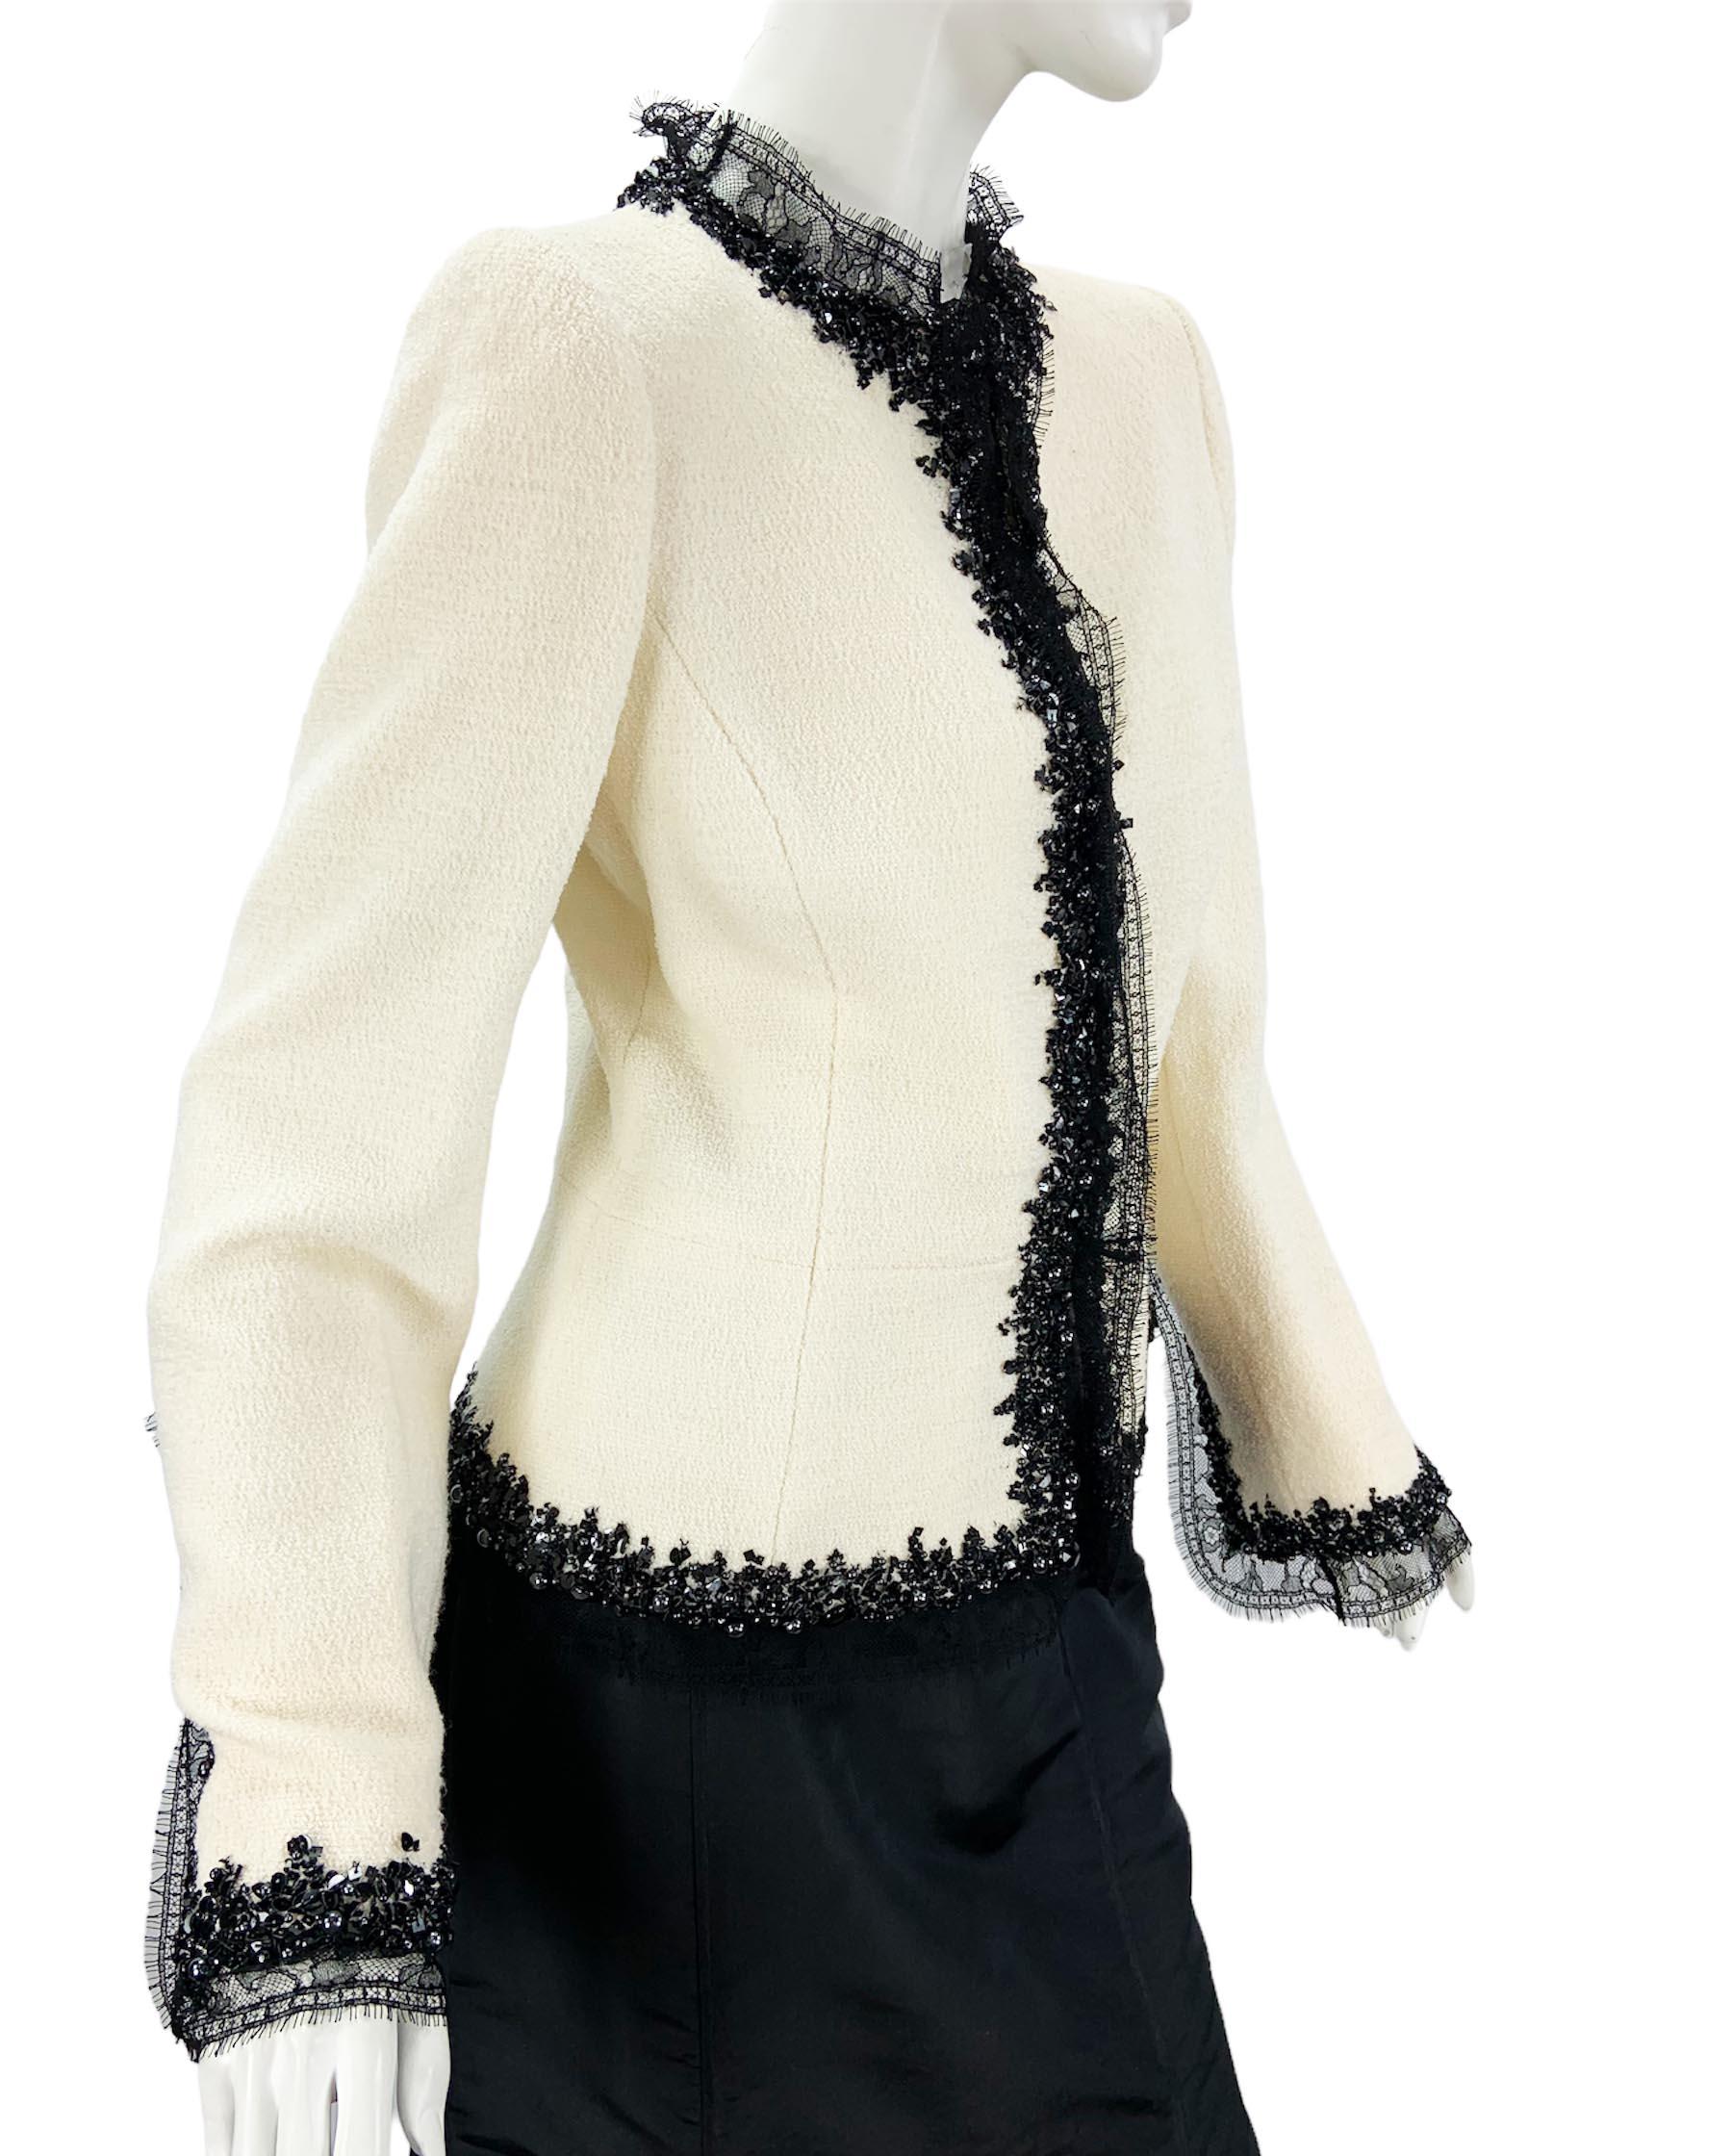 Vintage Oscar de la Renta Boucle Embellis Fitted Jacket
Taille américaine 8 
Veste cintrée en bouclette blanche avec dentelle noire, perles et paillettes. Entièrement doublé, style péplum, fermeture par crochets et œillets, épaules